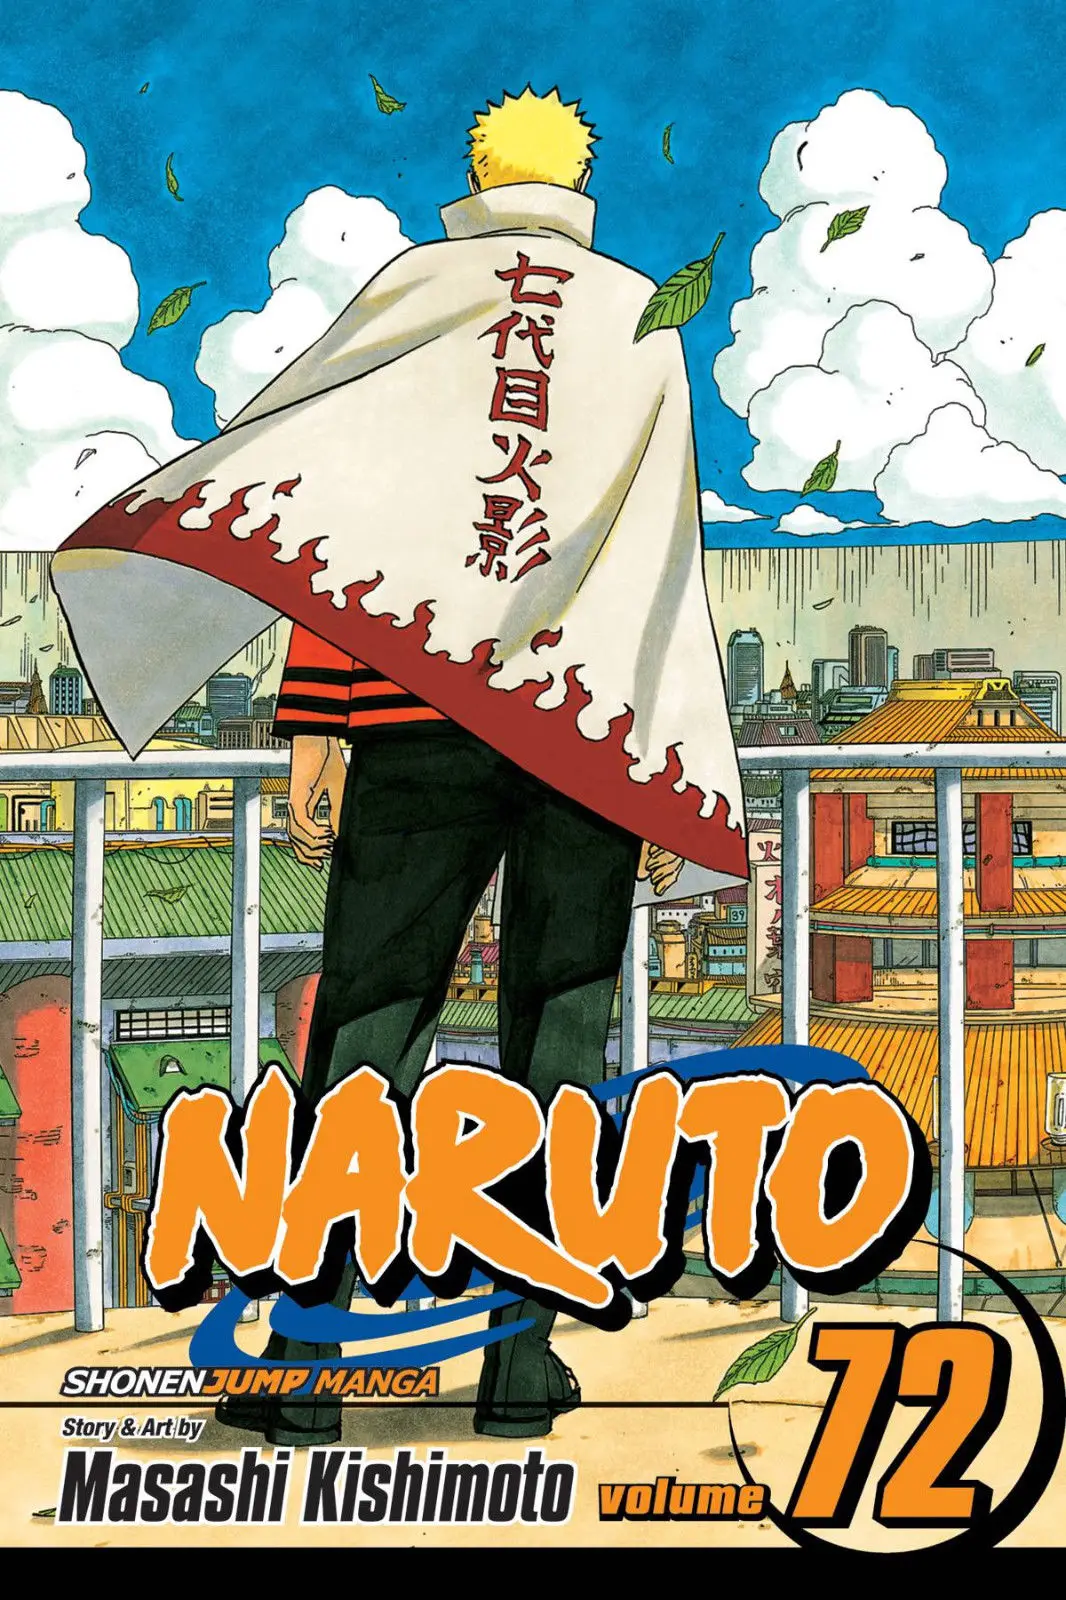 

Naruto VOL 1 - 72 Books ENLISH MANGA Cartoon t shirt men Unisex New Fashion tshirt free shipping funny tops